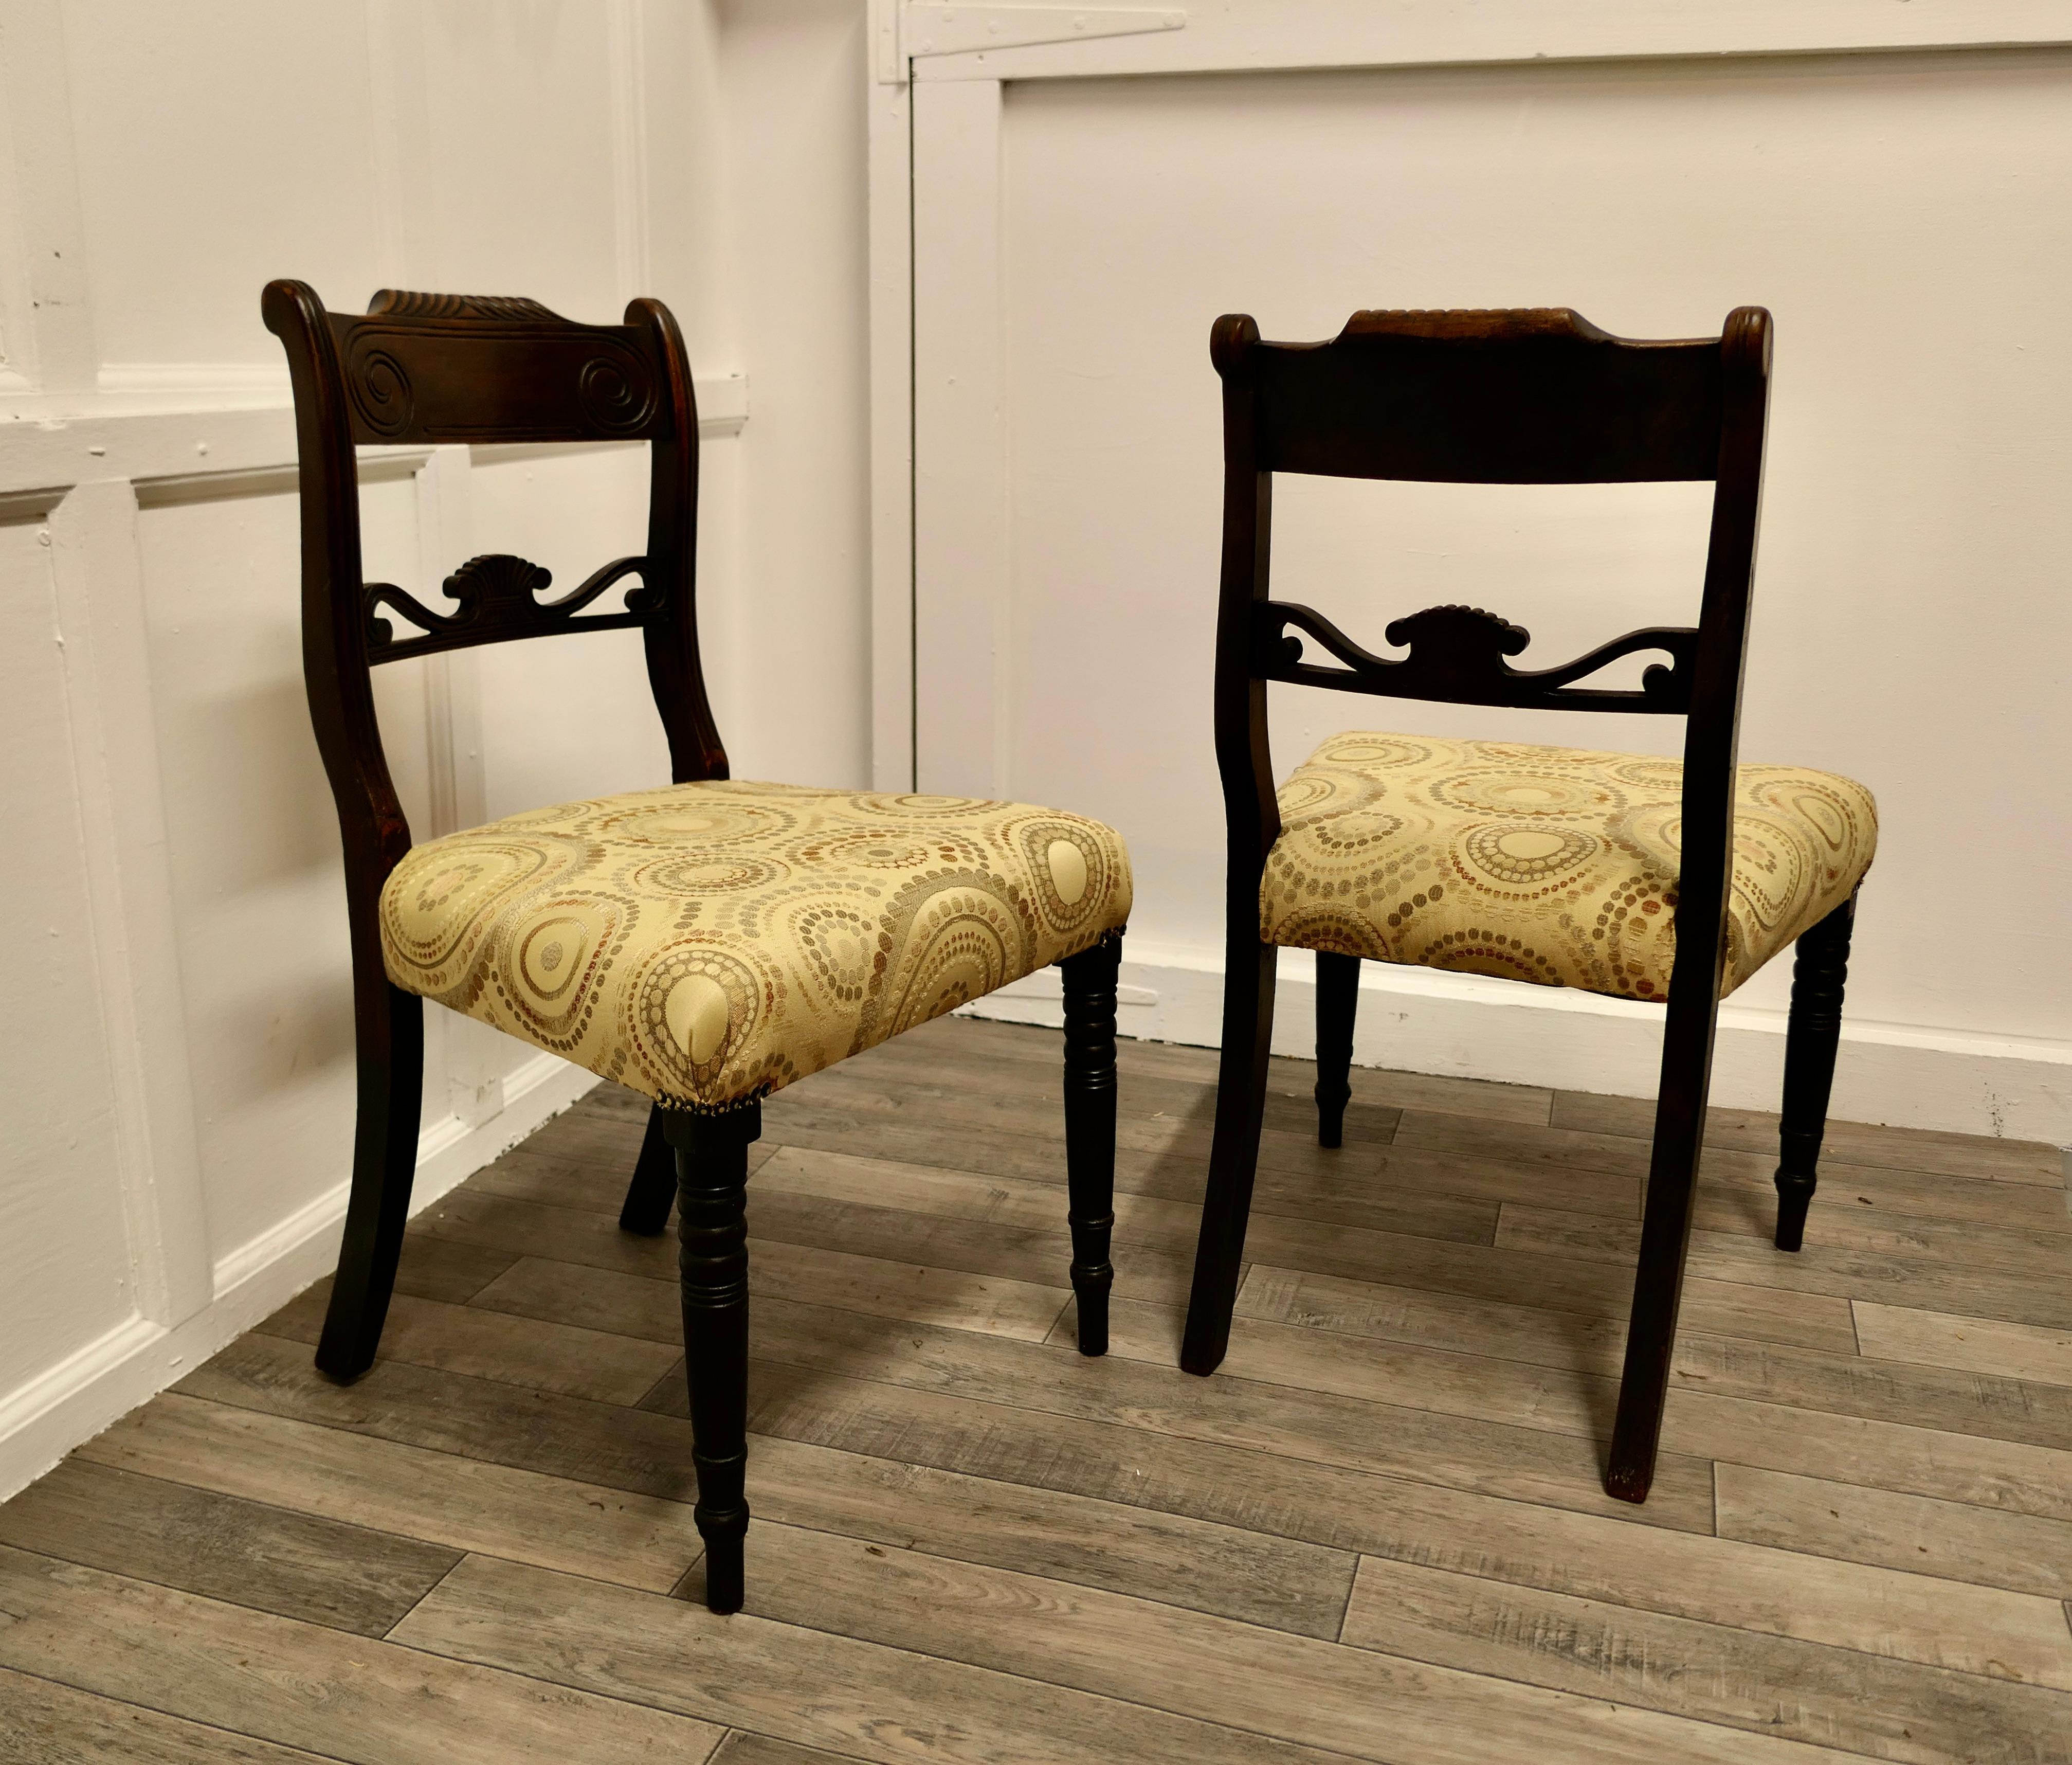 2 schöne Regency-Stühle mit neuen gepolsterten Sitzen 
 
Ein sehr attraktives Paar Stühle mit einer breiten geschnitzten Rückenlehne und einer geschnitzten Mittelschiene.
Die Stühle haben schlanke, gedrechselte Beine und die Sitze sind mit neuen